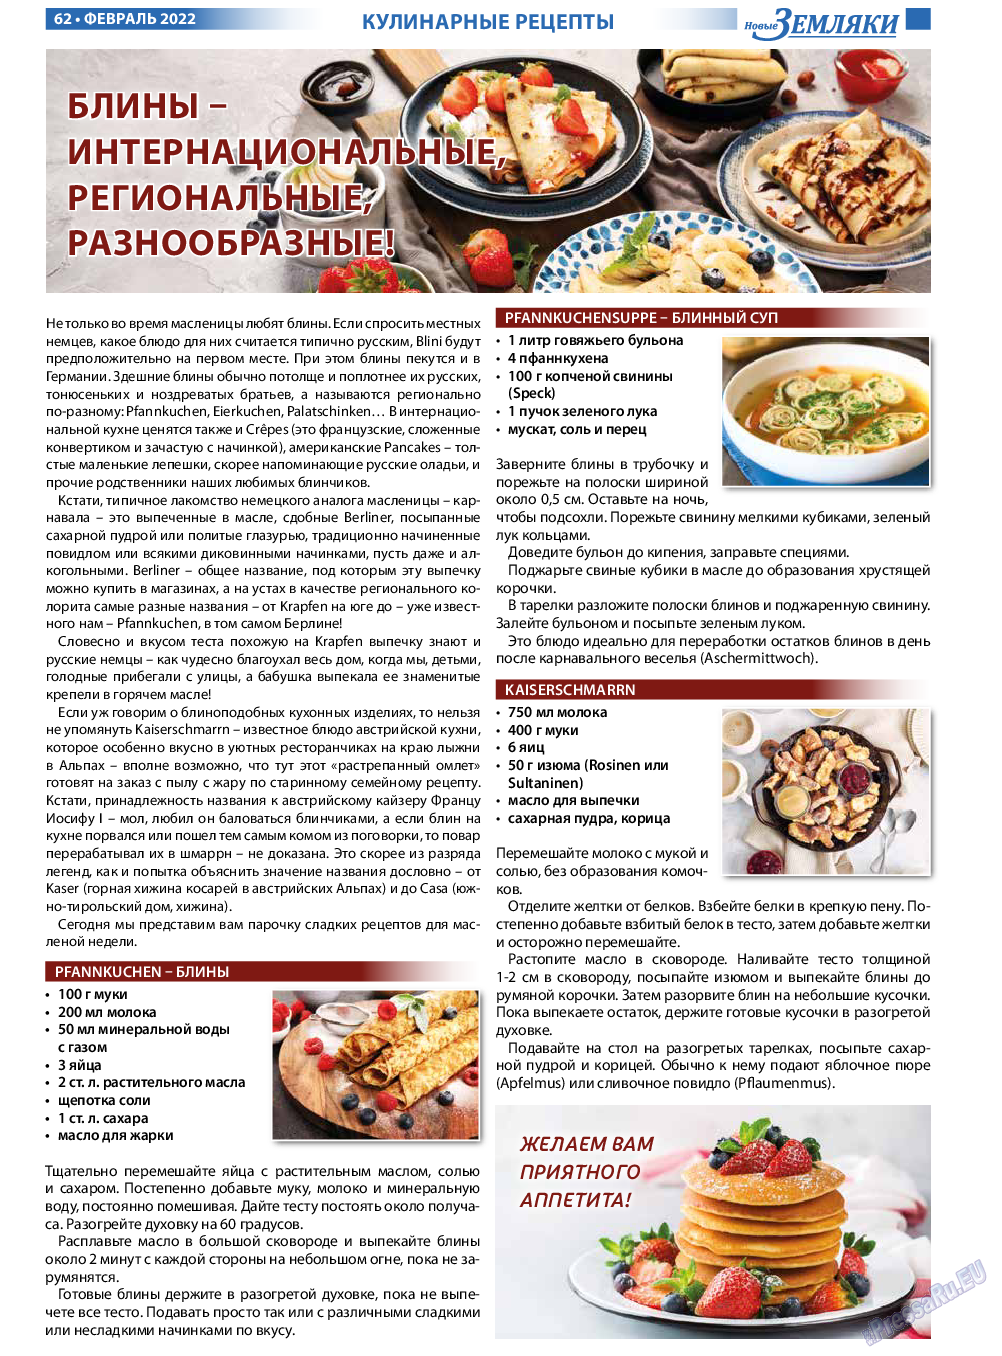 Новые Земляки, газета. 2022 №2 стр.62